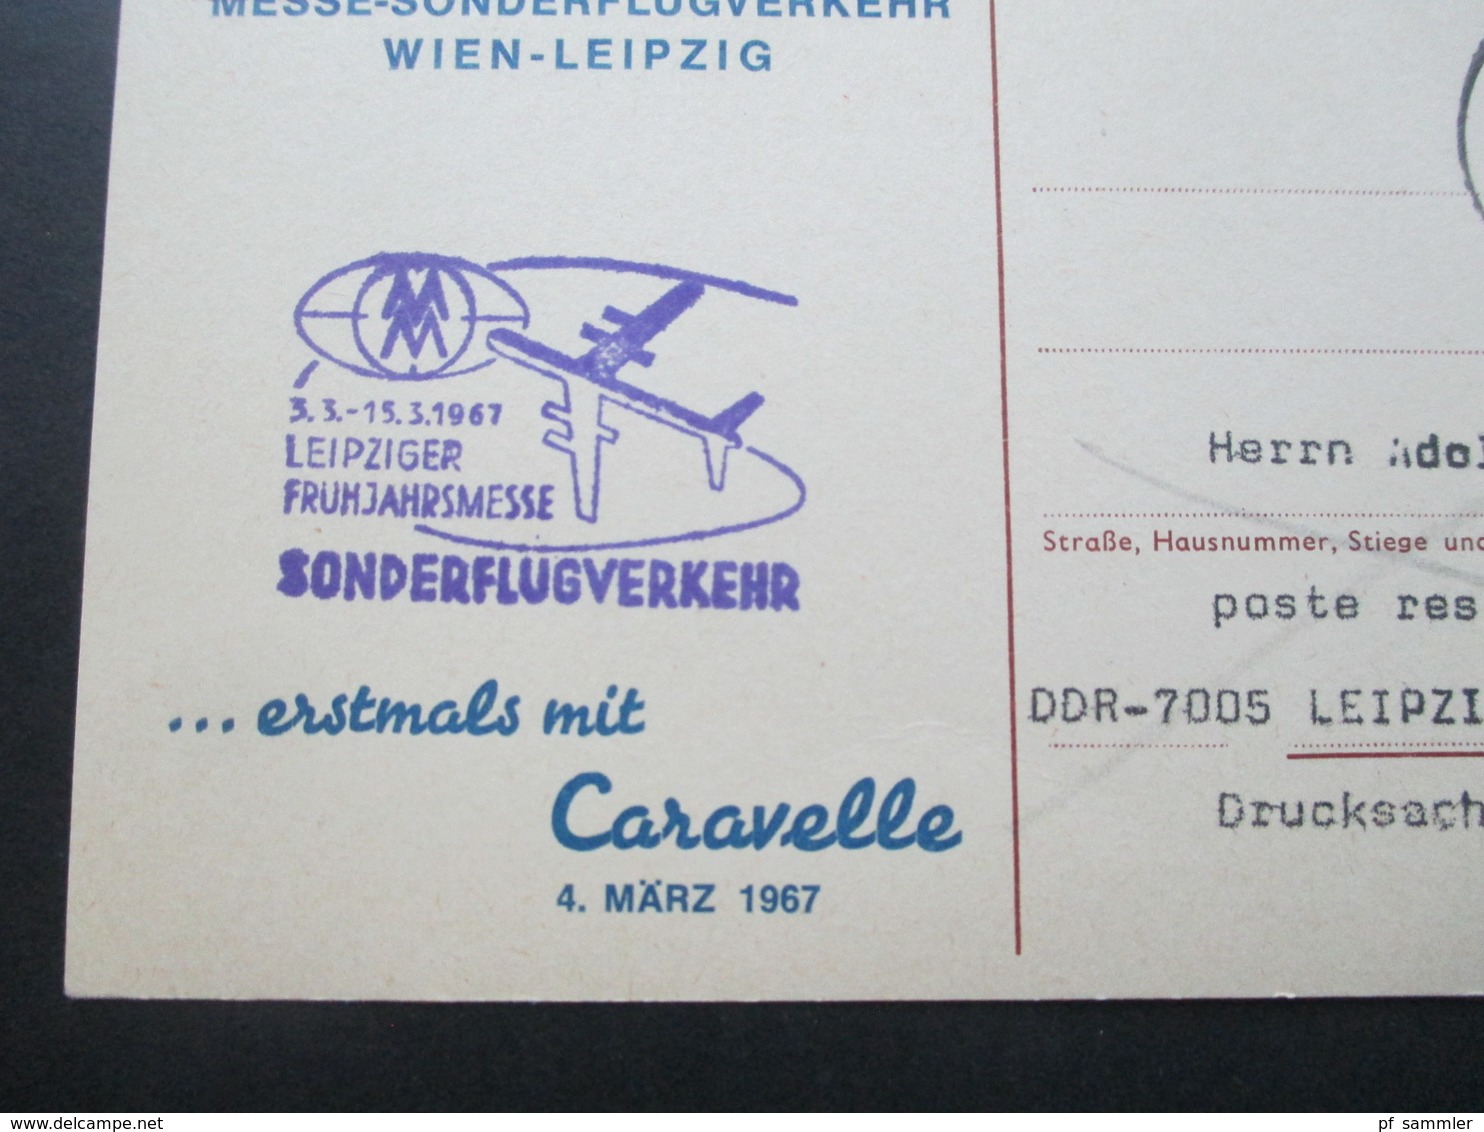 Österreich 1967 Messe Sonderflugverkehr AUA Wien - Leipzig Erstmals Mit Caravelle Freistempel AUA Erstflug - Briefe U. Dokumente